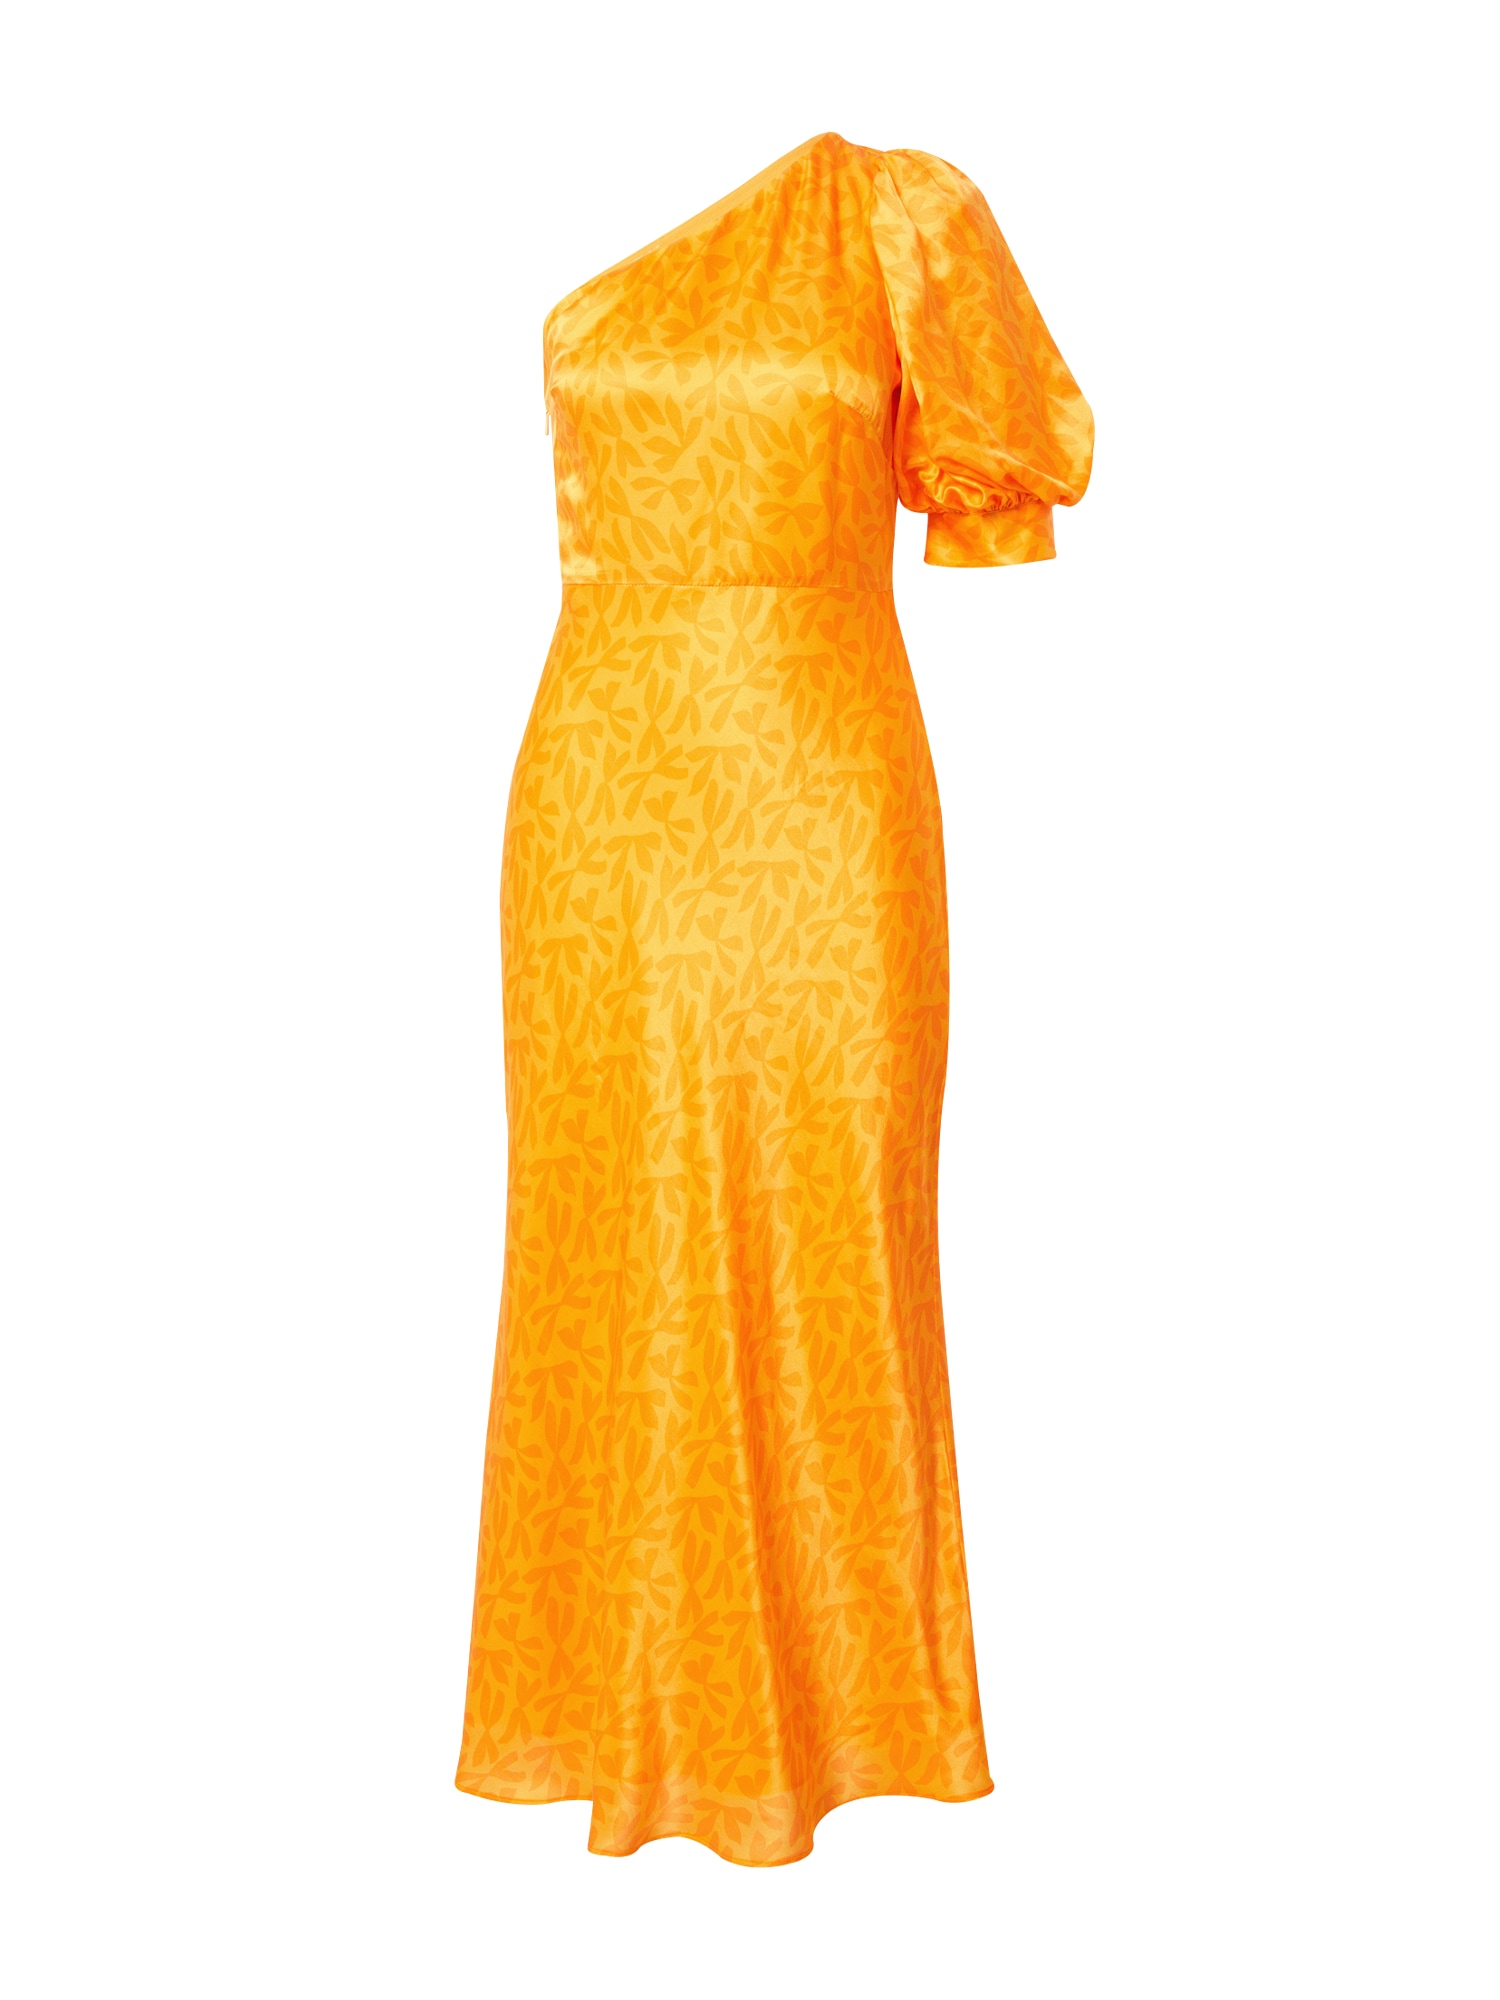 Šaty SALLY oranžová svetlooranžová Whistles